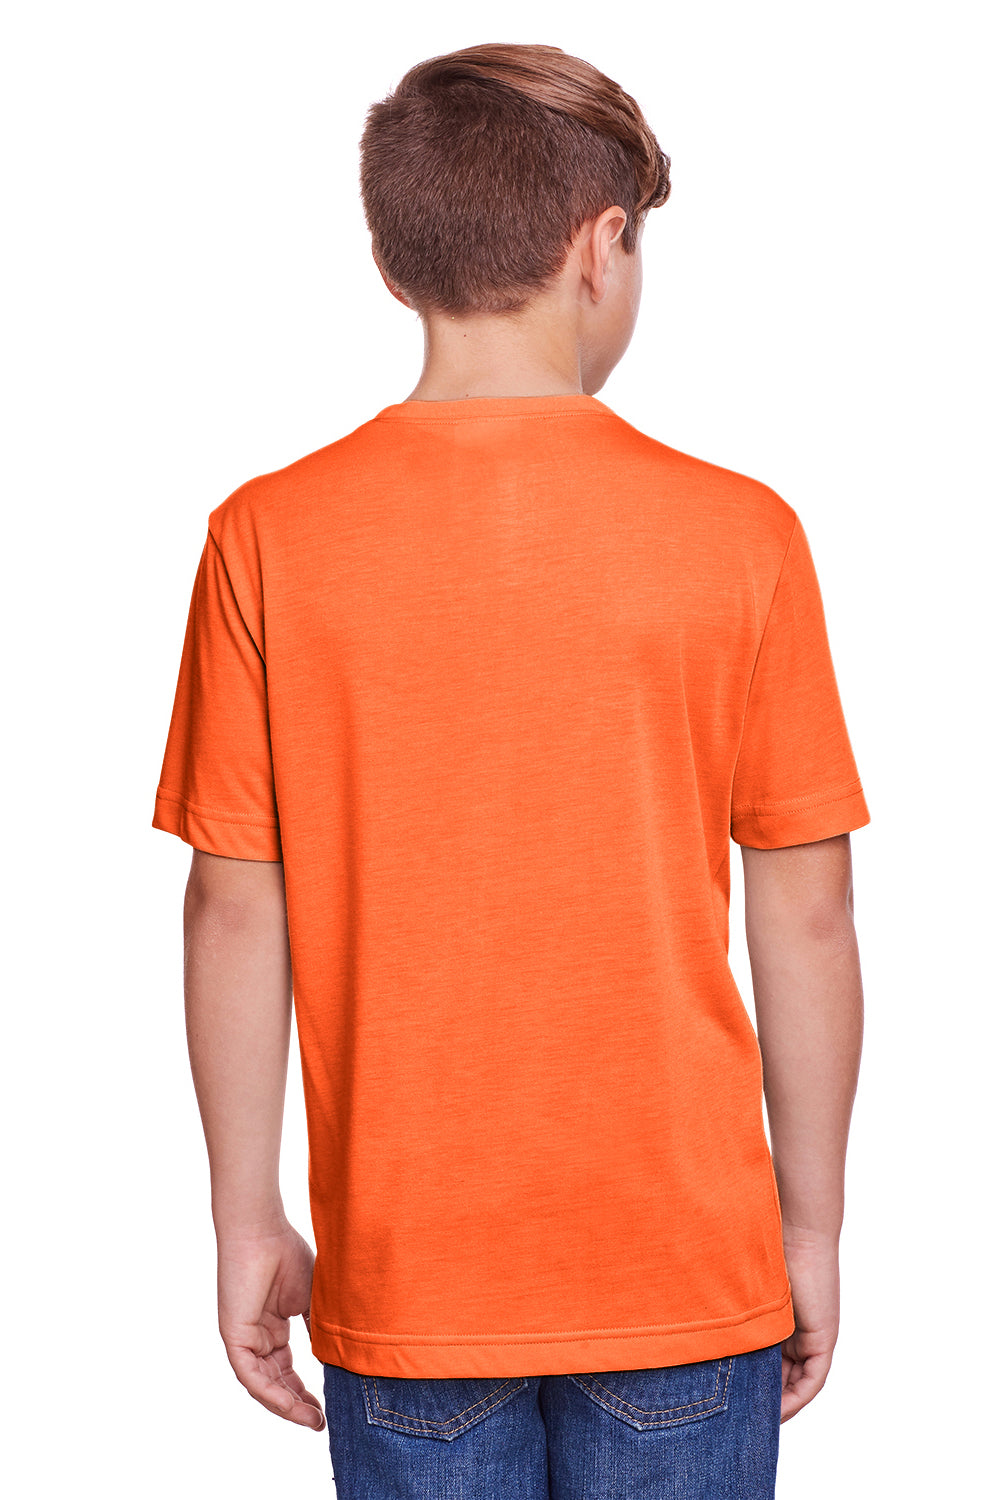 Core 365 CE111Y Youth Fusion ChromaSoft Performance Moisture Wicking Short Sleeve Crewneck T-Shirt Orange Back